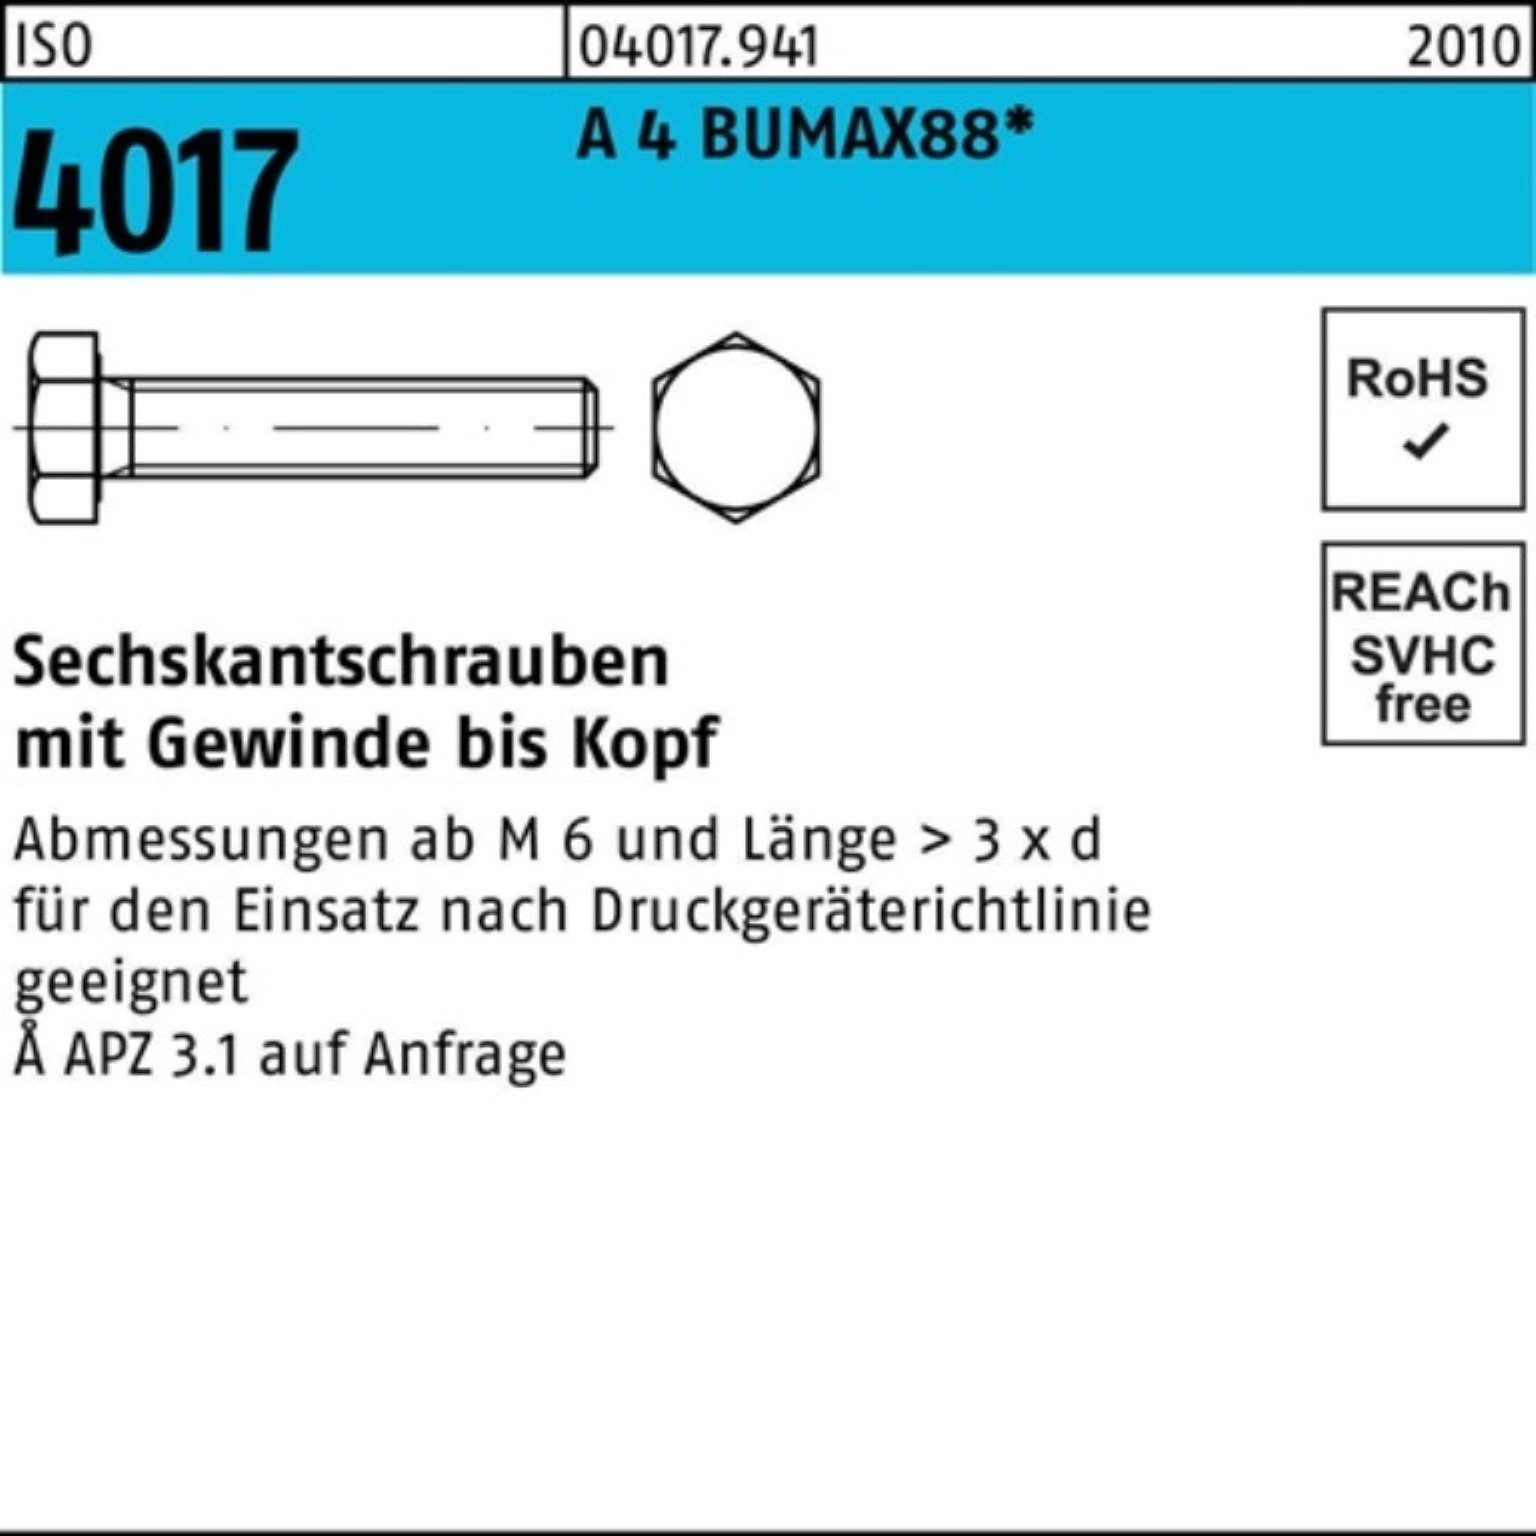 Bufab Sechskantschraube 100er Pack Sechskantschraube ISO 4017 VG M16x 45 A 4 BUMAX88 25 Stück